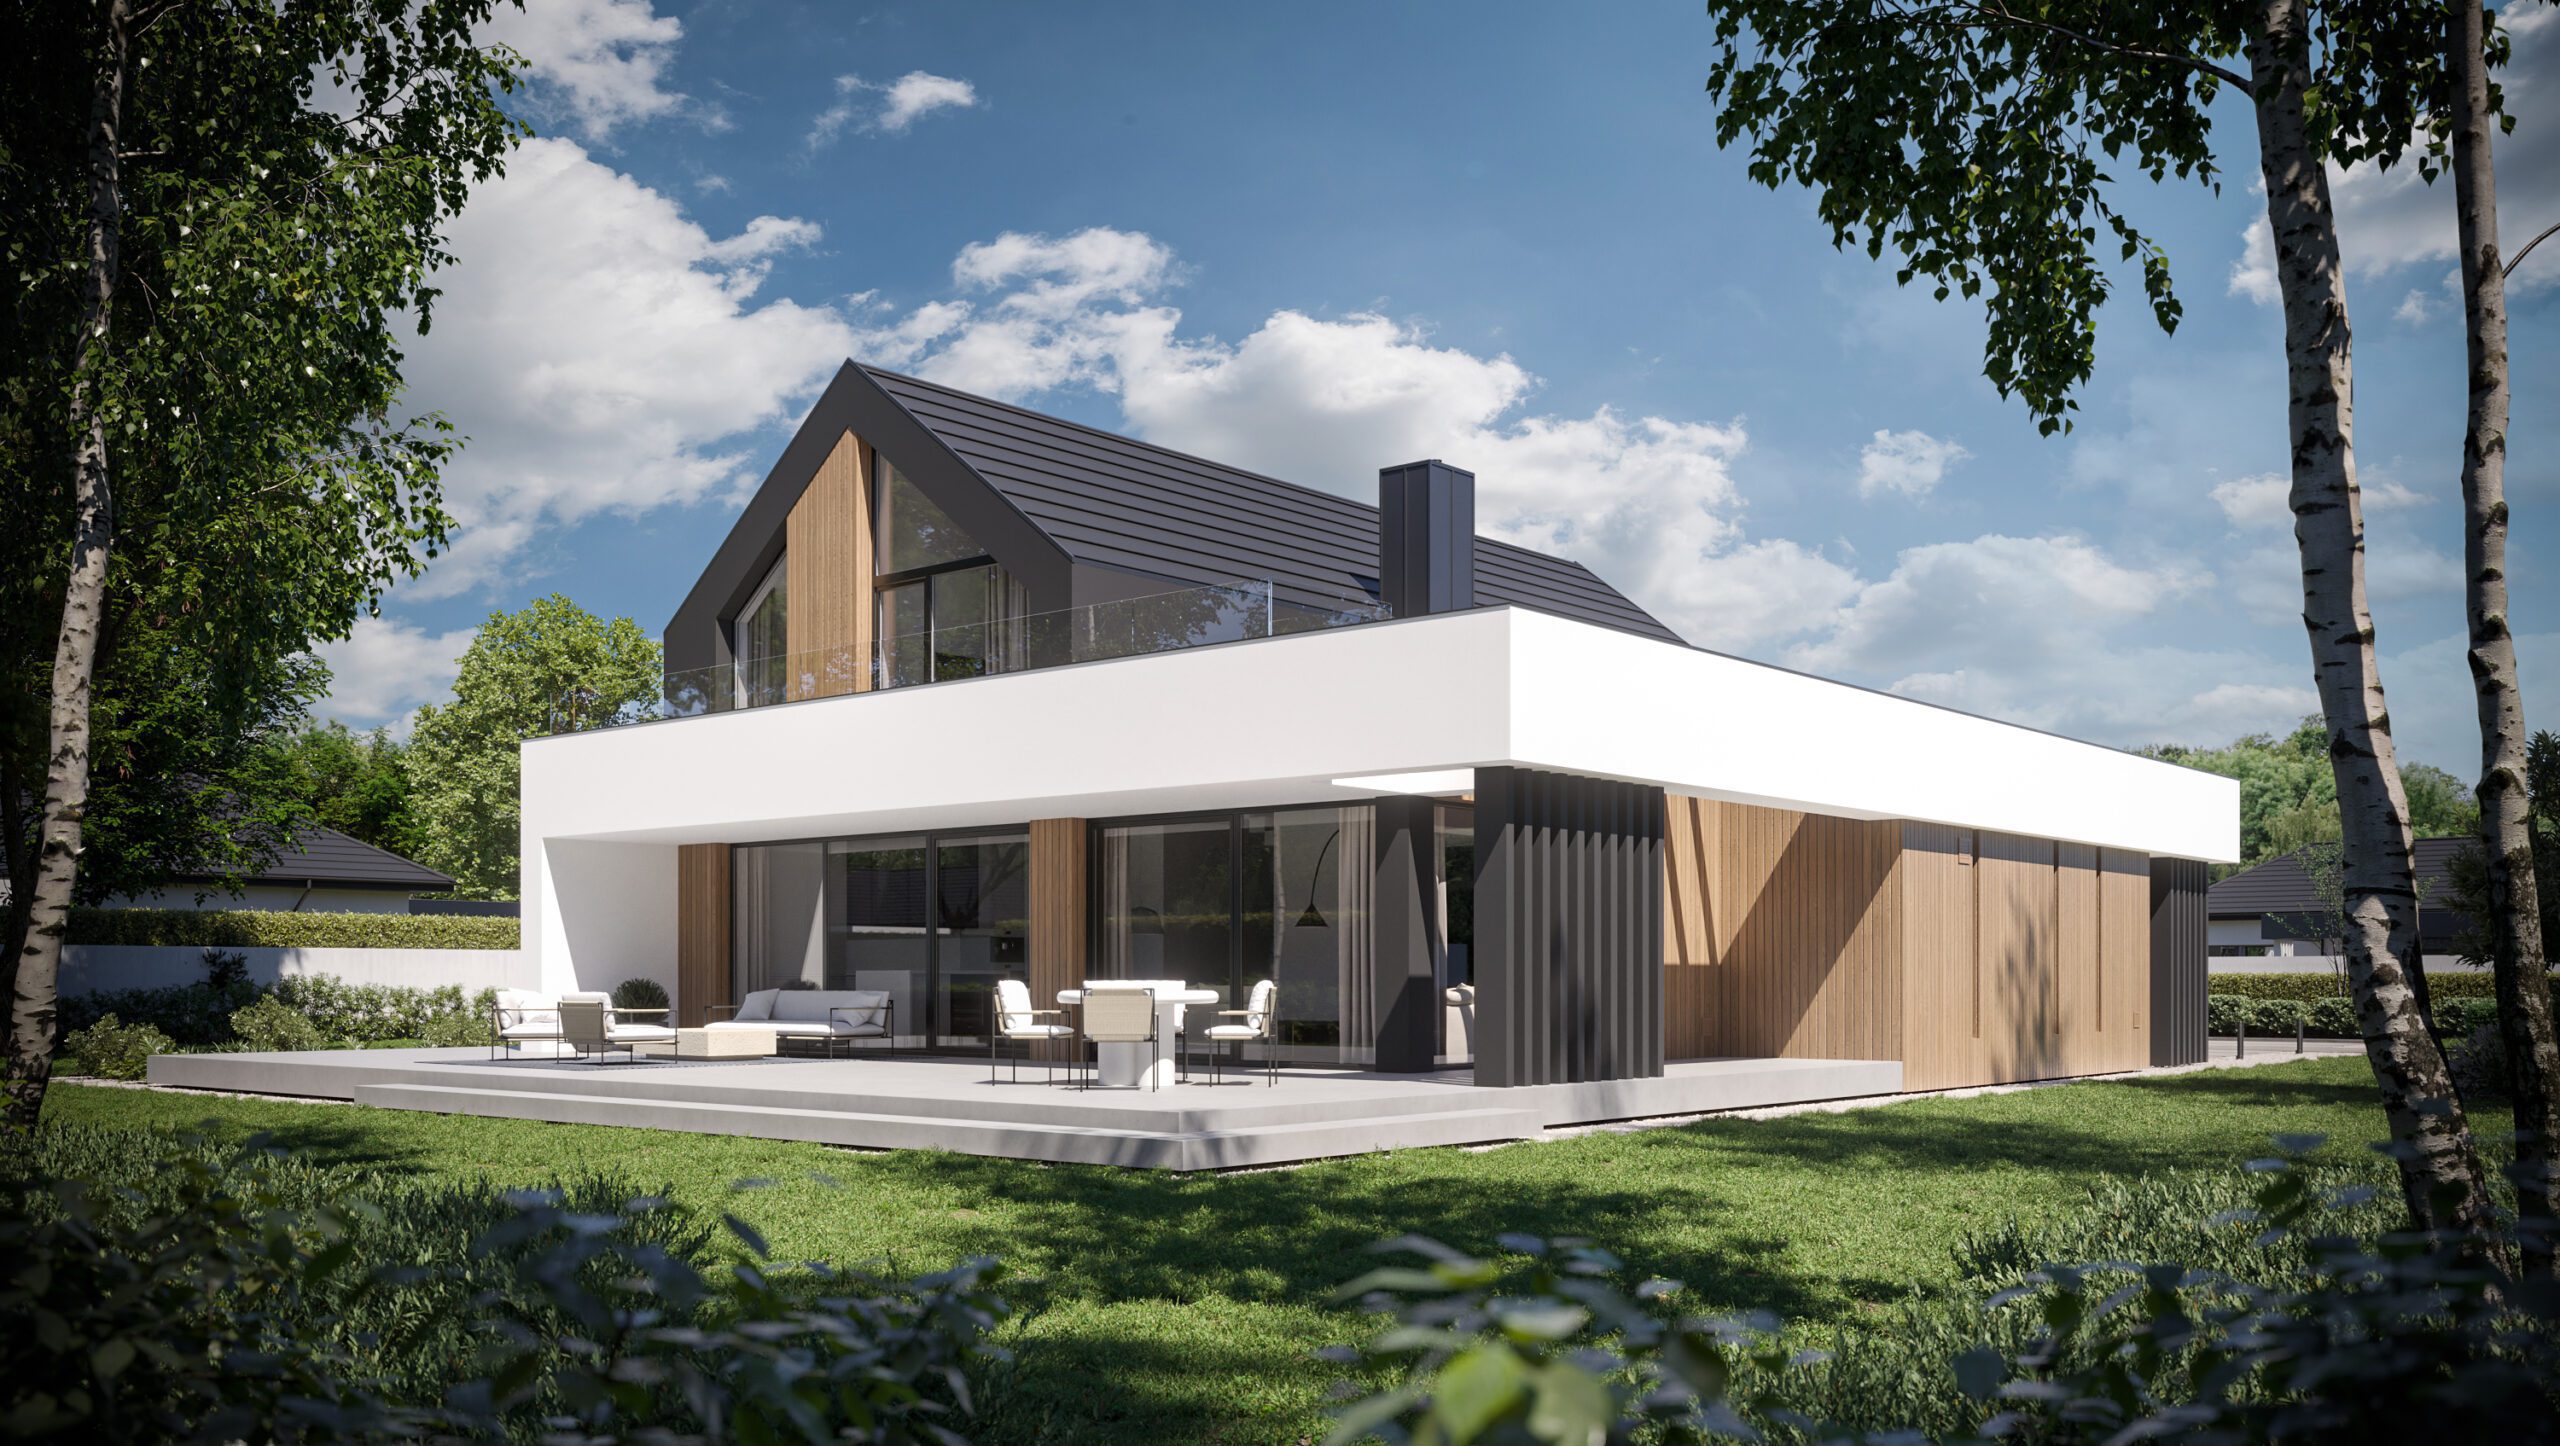 Gotowy projekt domu New House 790 w1 - jednorodzinny, z poddaszem, w stylu nowoczesnej stodoły, z garażem dwustanowiskowym.